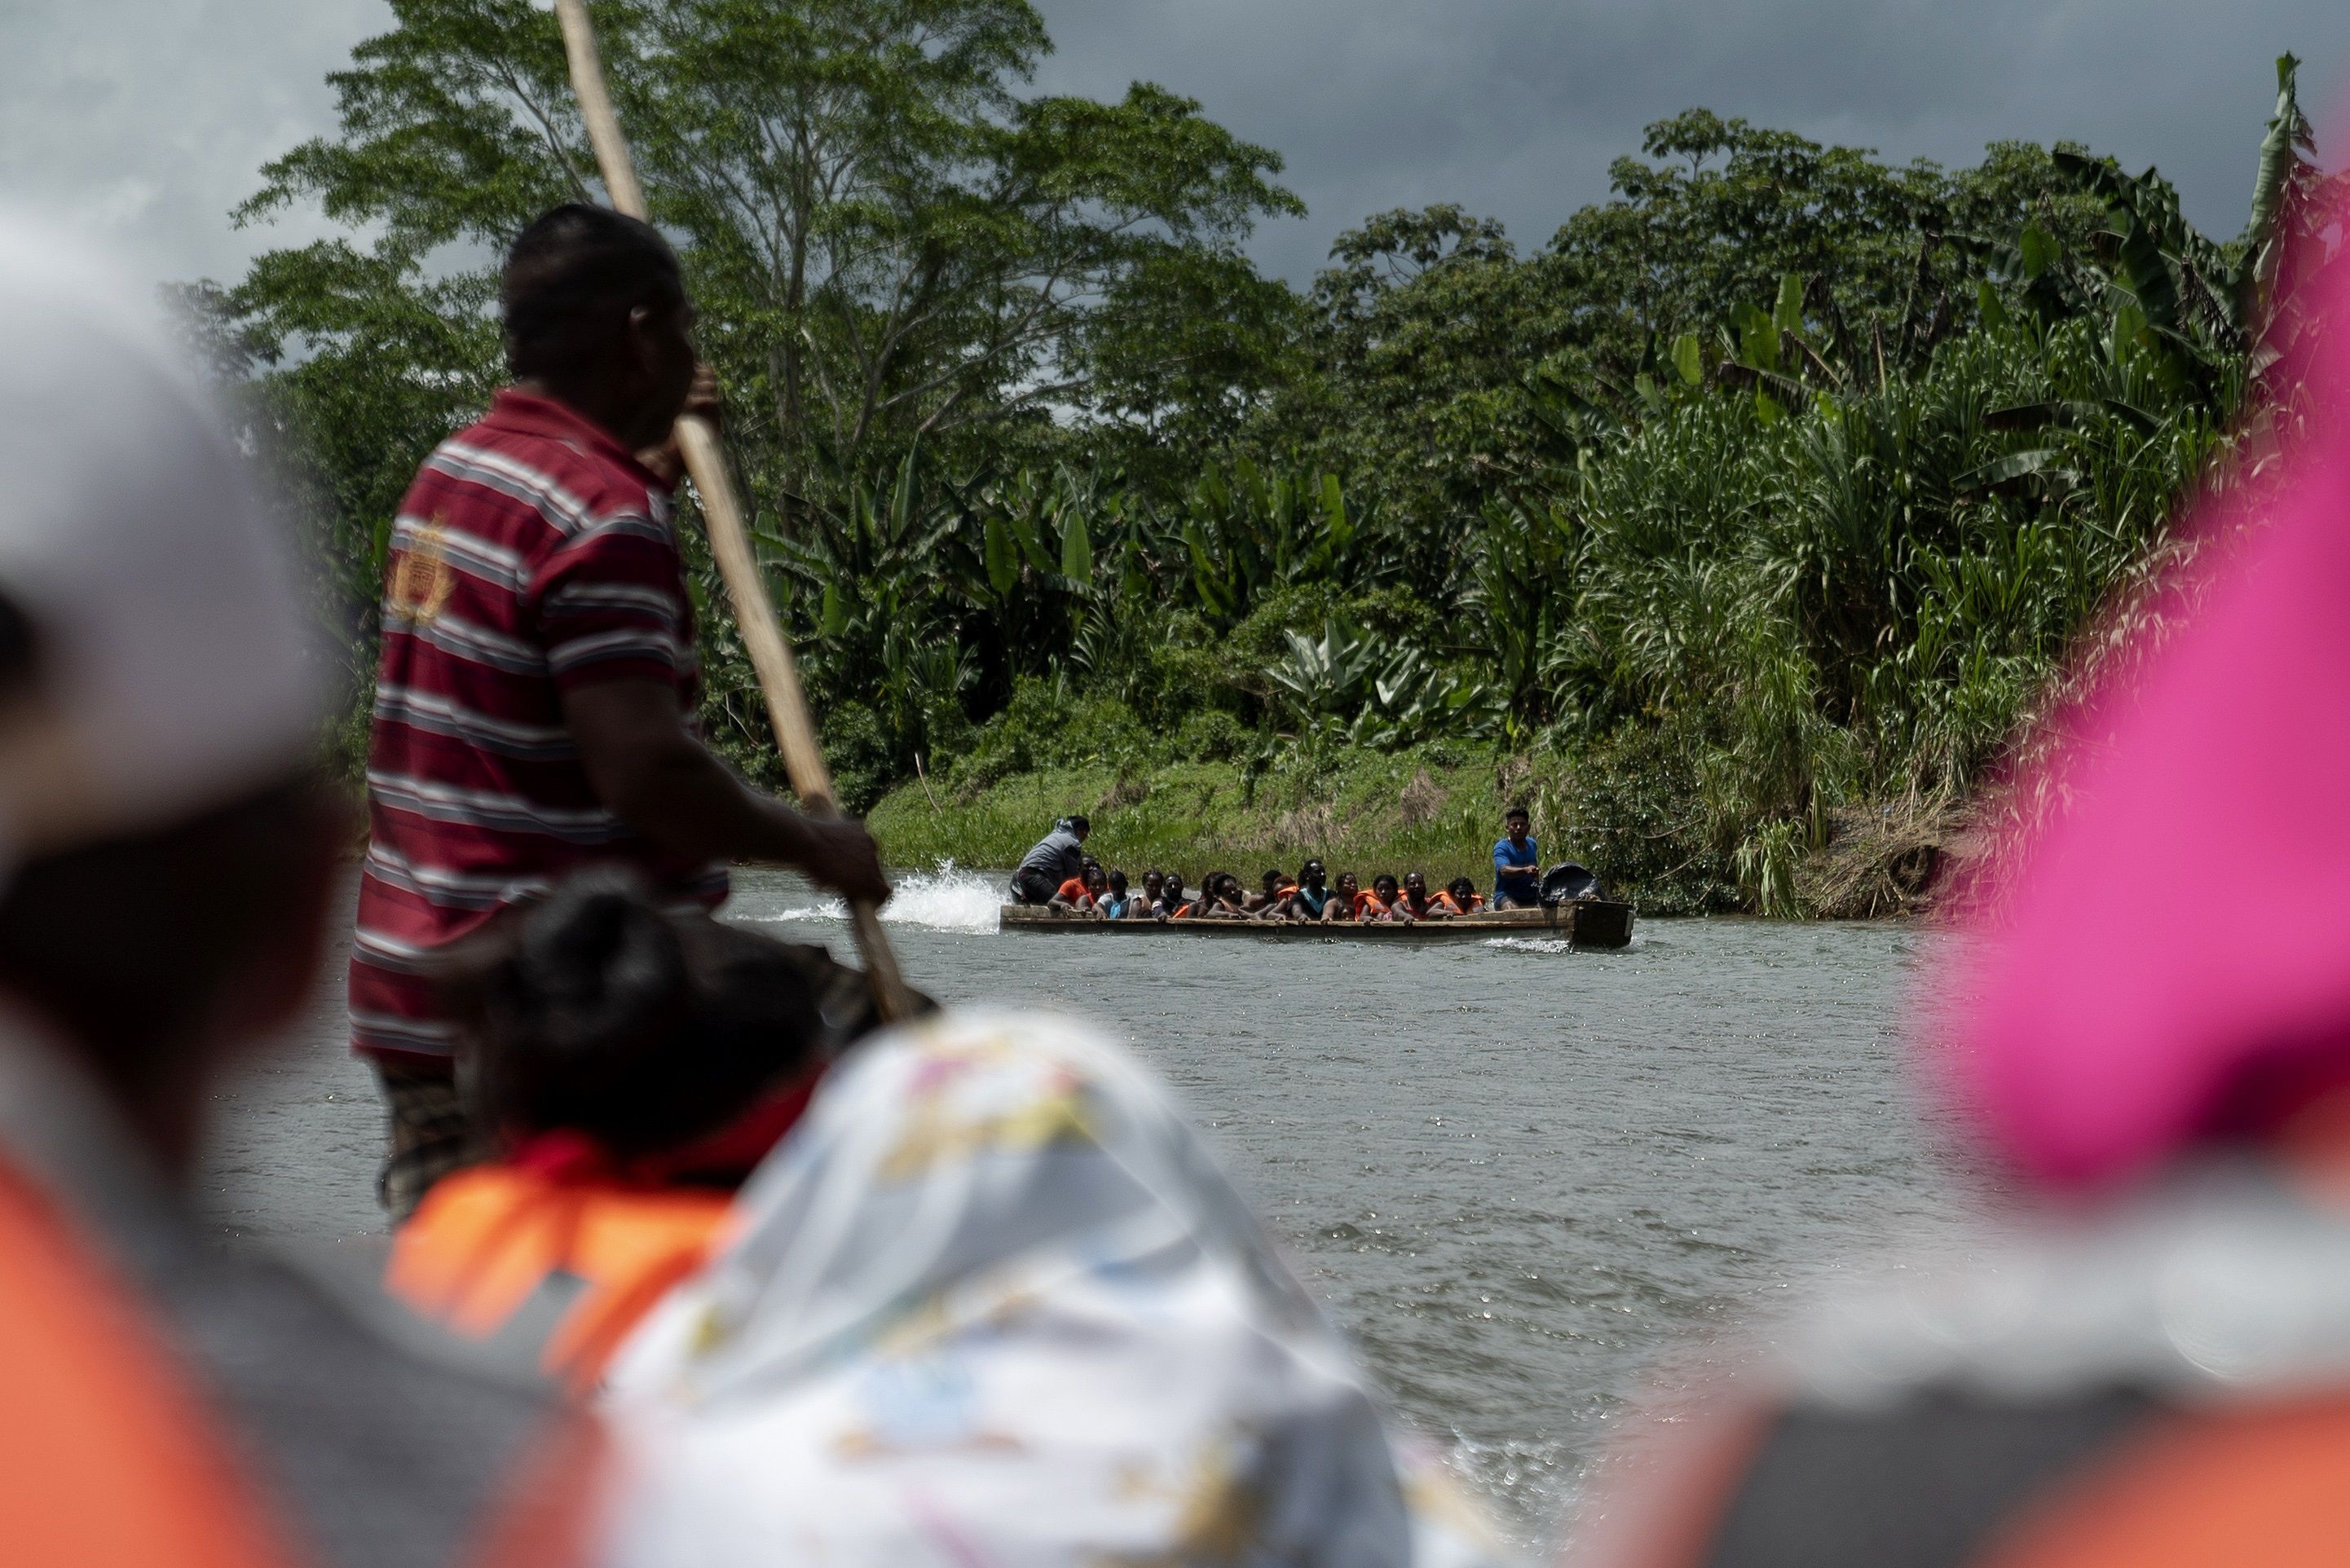 Los migrantes viajaban en una lancha rápida cuando fueron vistos por la patrulla panameña. (Foto referencial/EFE/Sara De La Rubia/Médicos Sin Fronteras)
